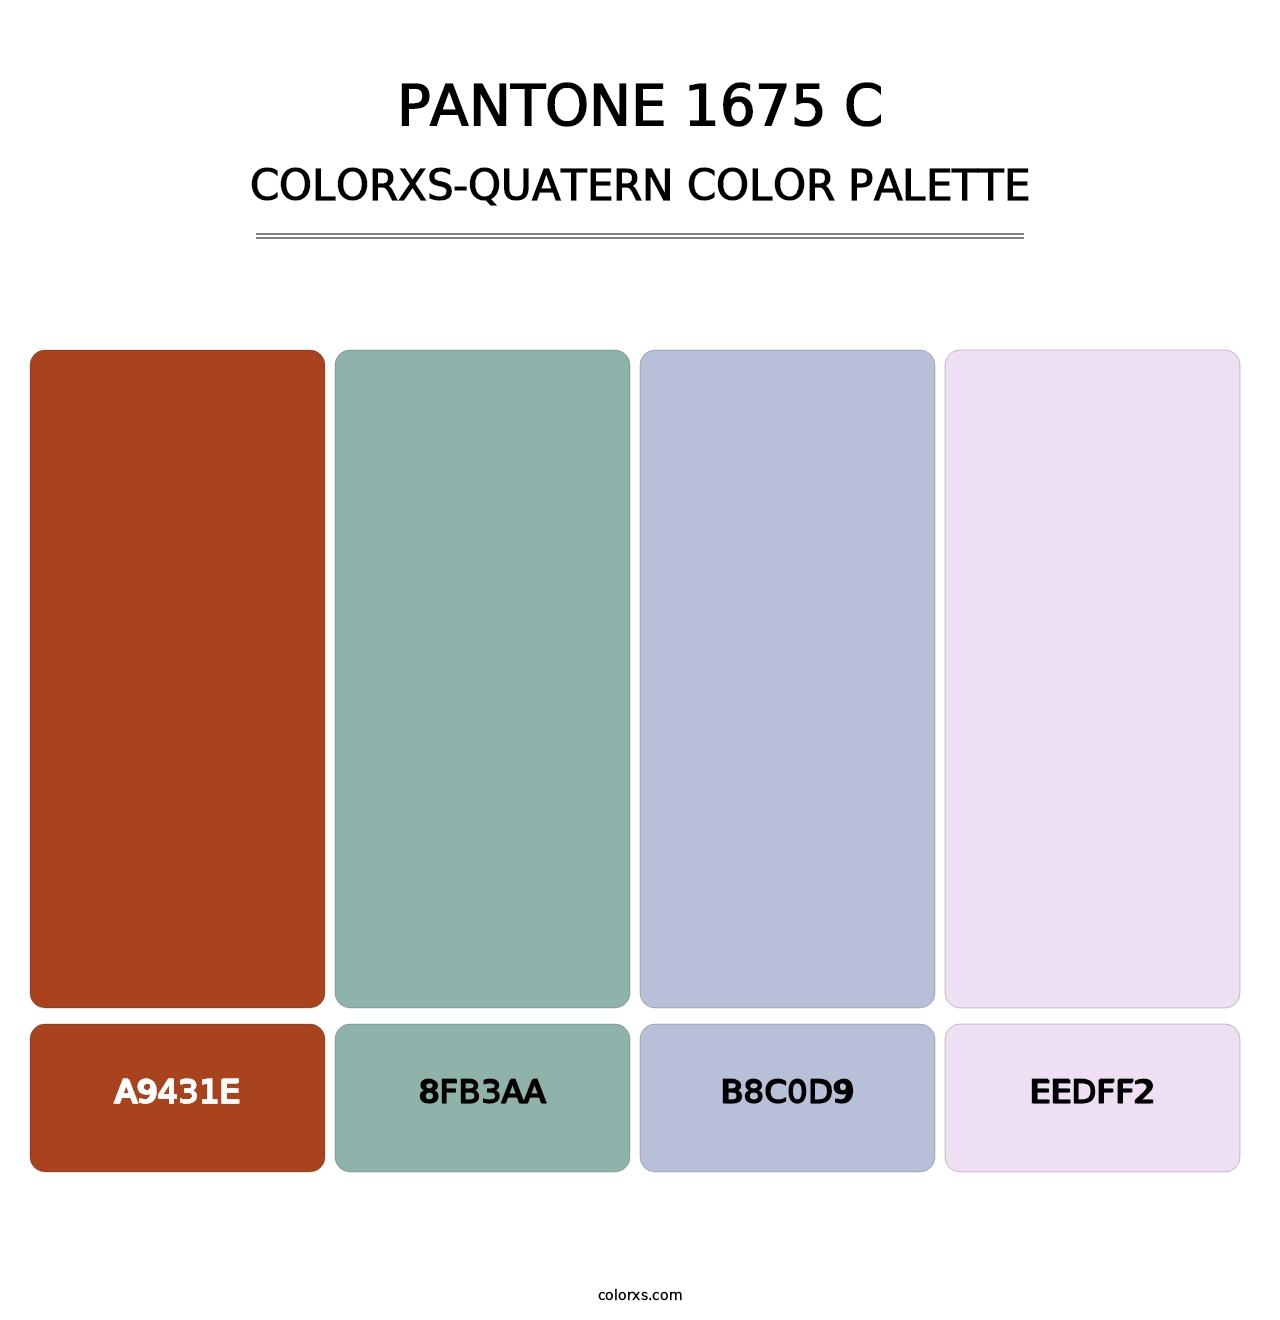 PANTONE 1675 C - Colorxs Quatern Palette